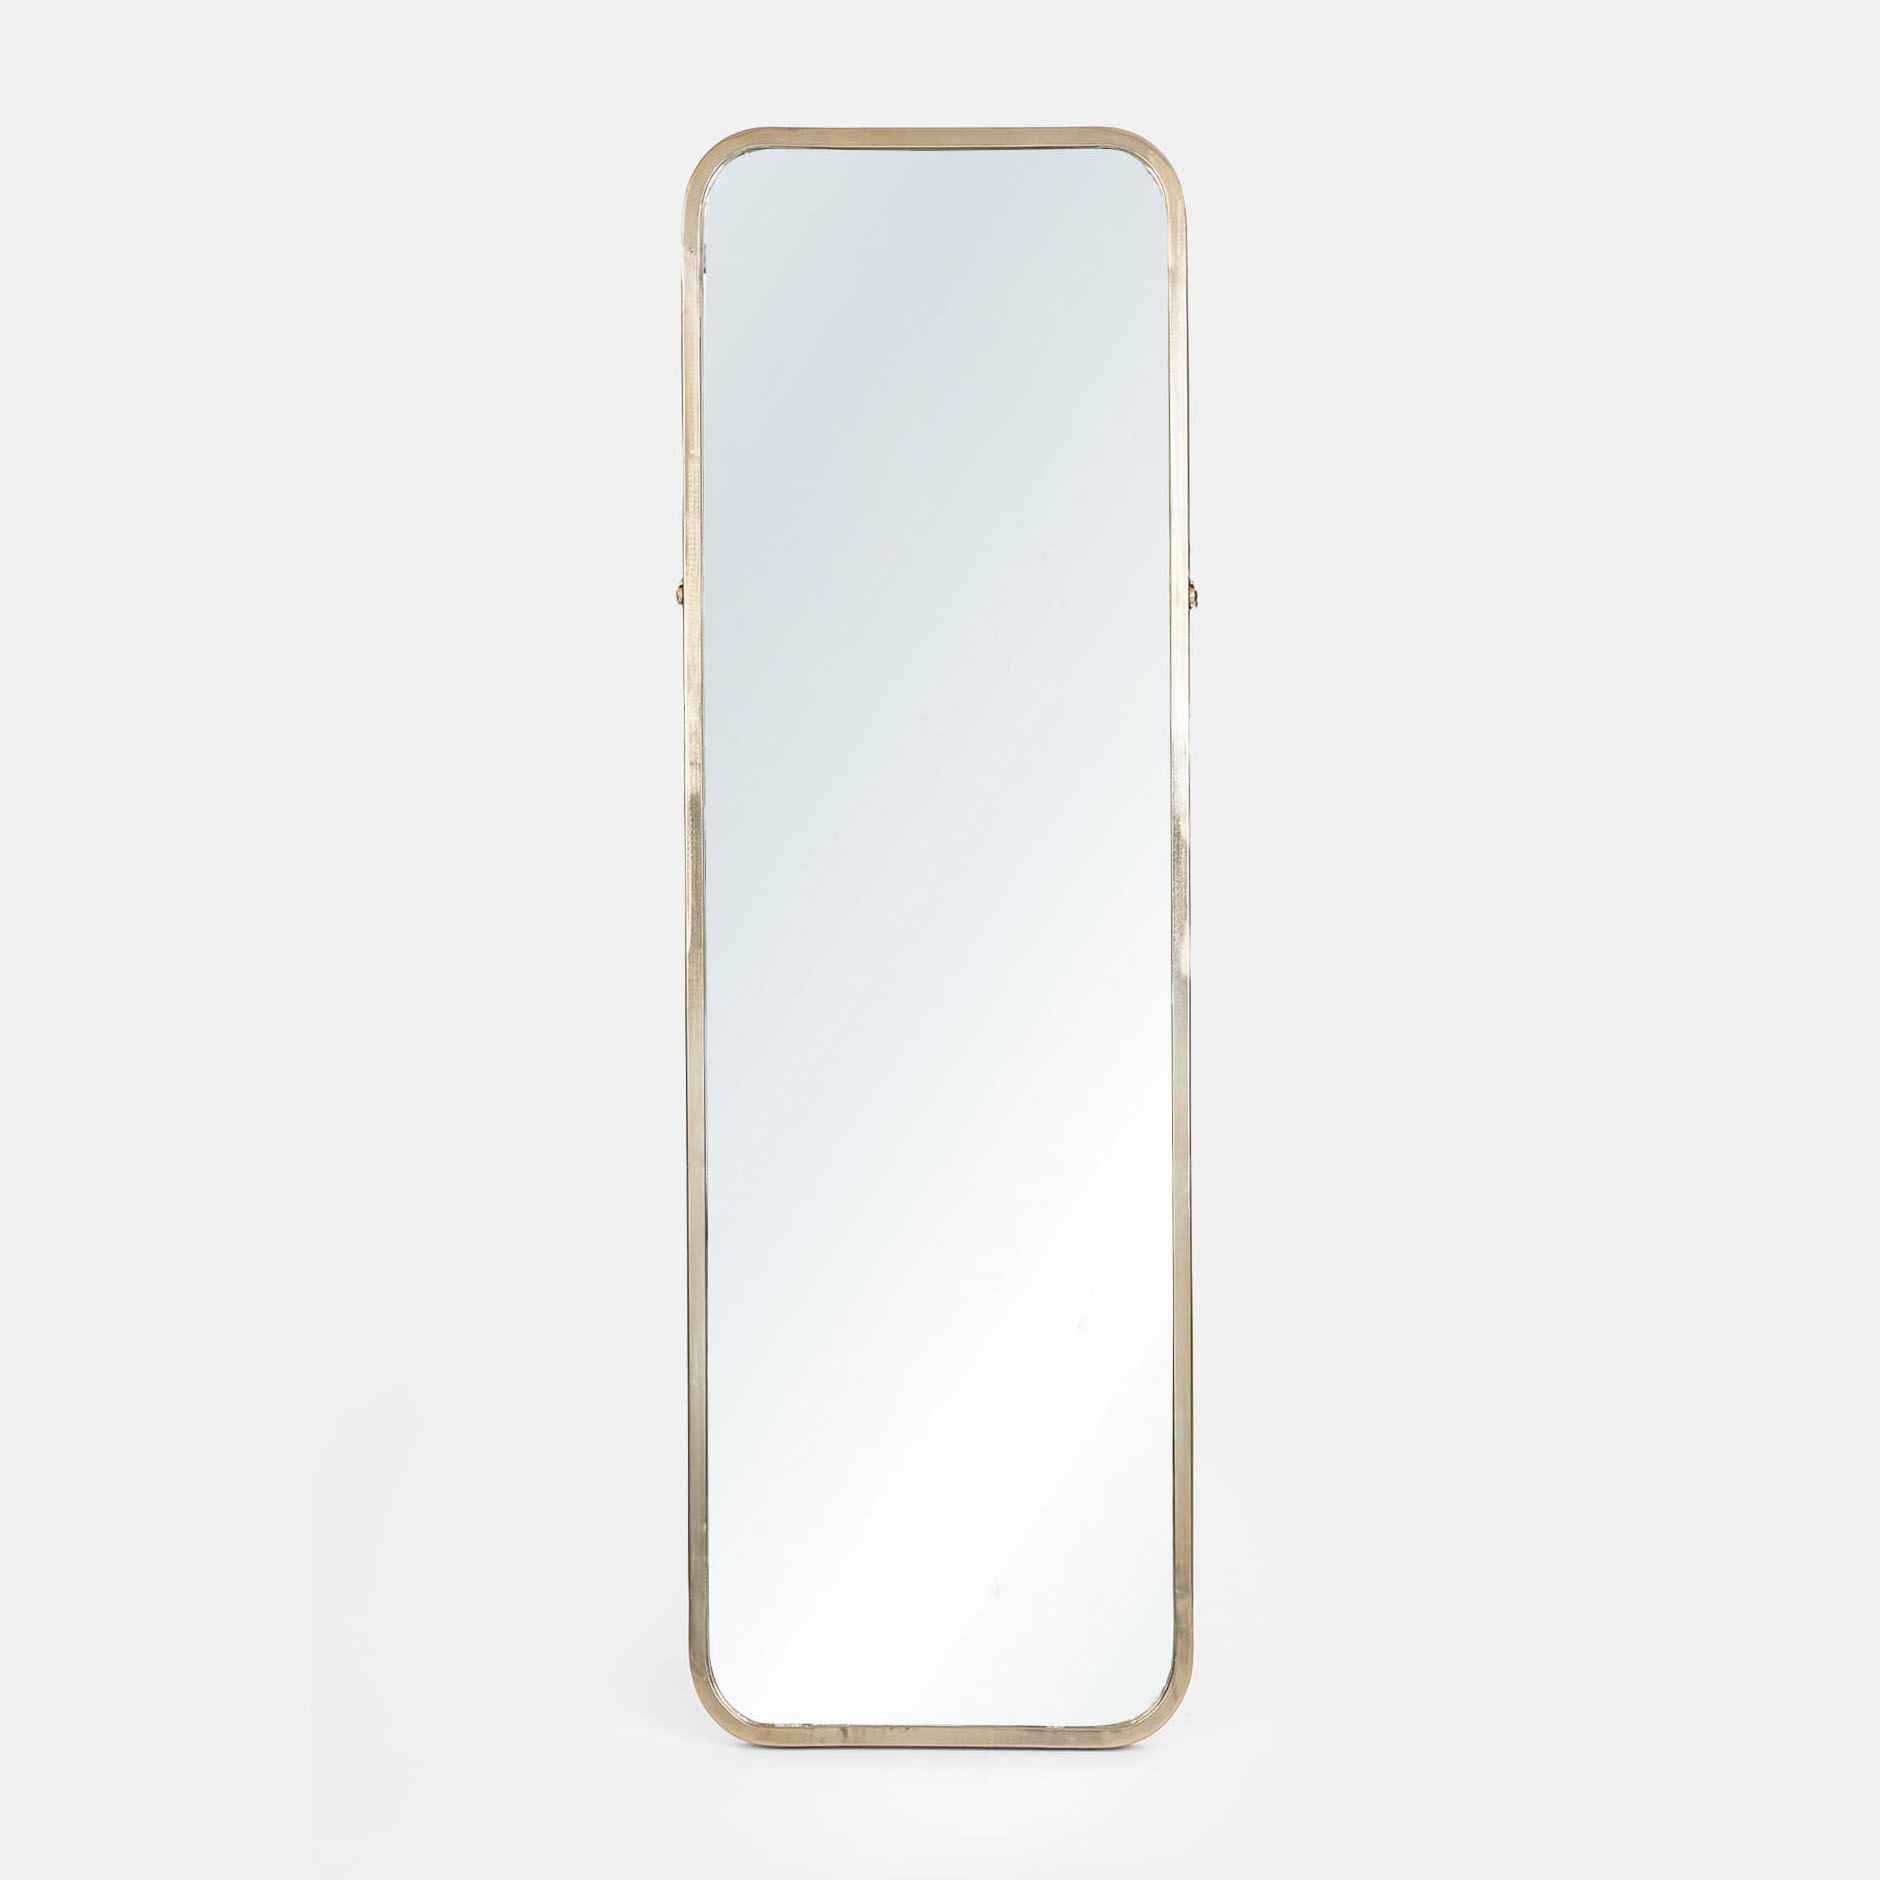 Round Gold Wall mirror